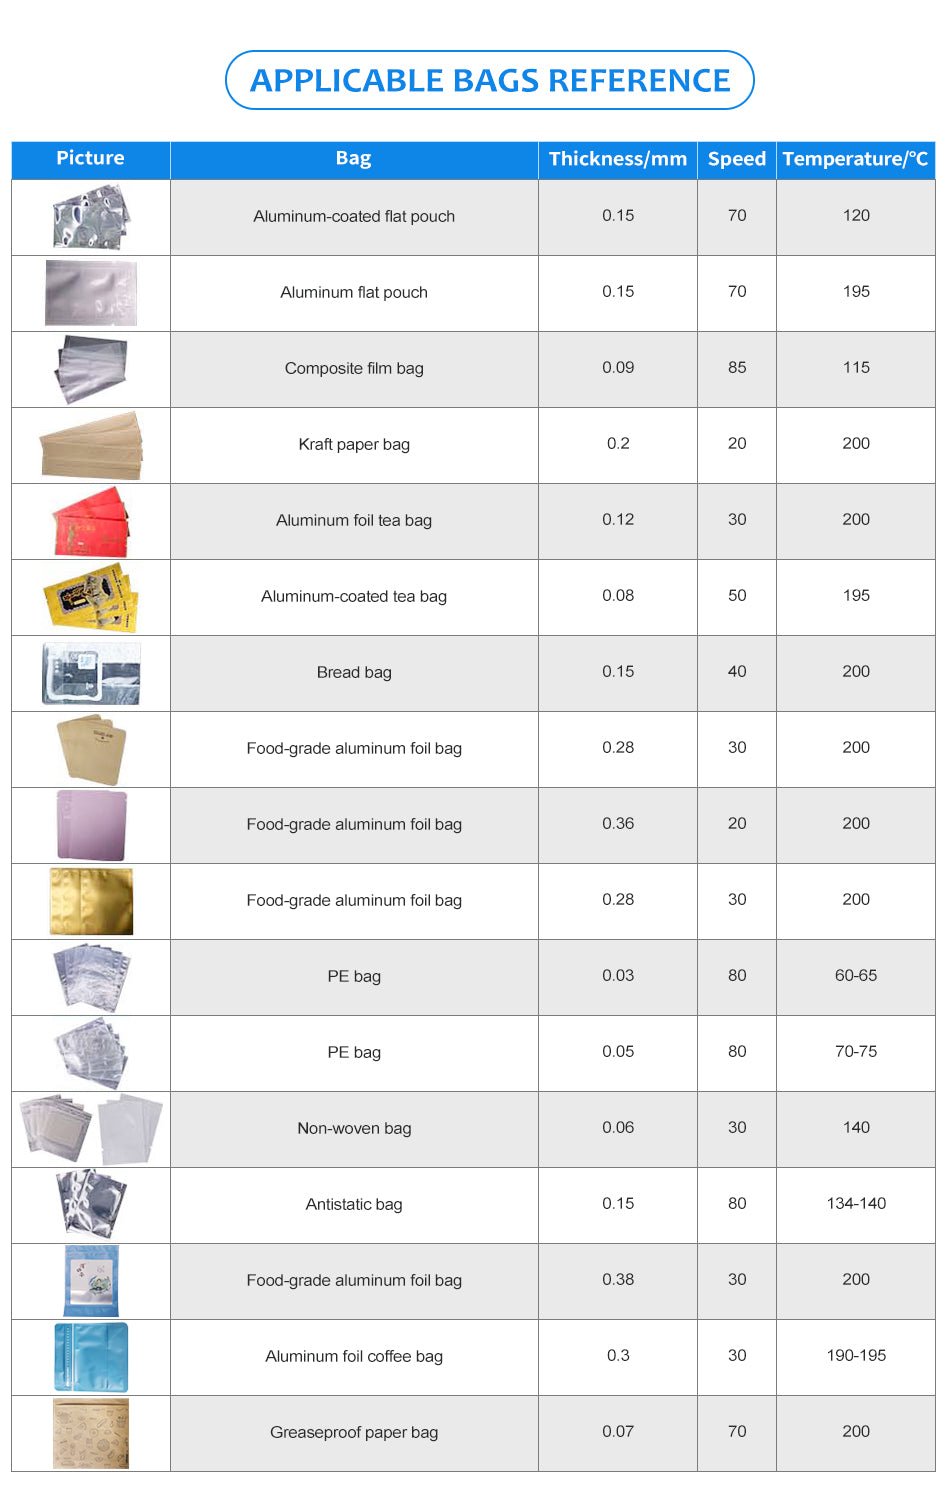 ZONESUN ZS-GLF1P Mini Aluminum Foil Composite Plastic Film PE Bag Sealer Roller Sealing Machine